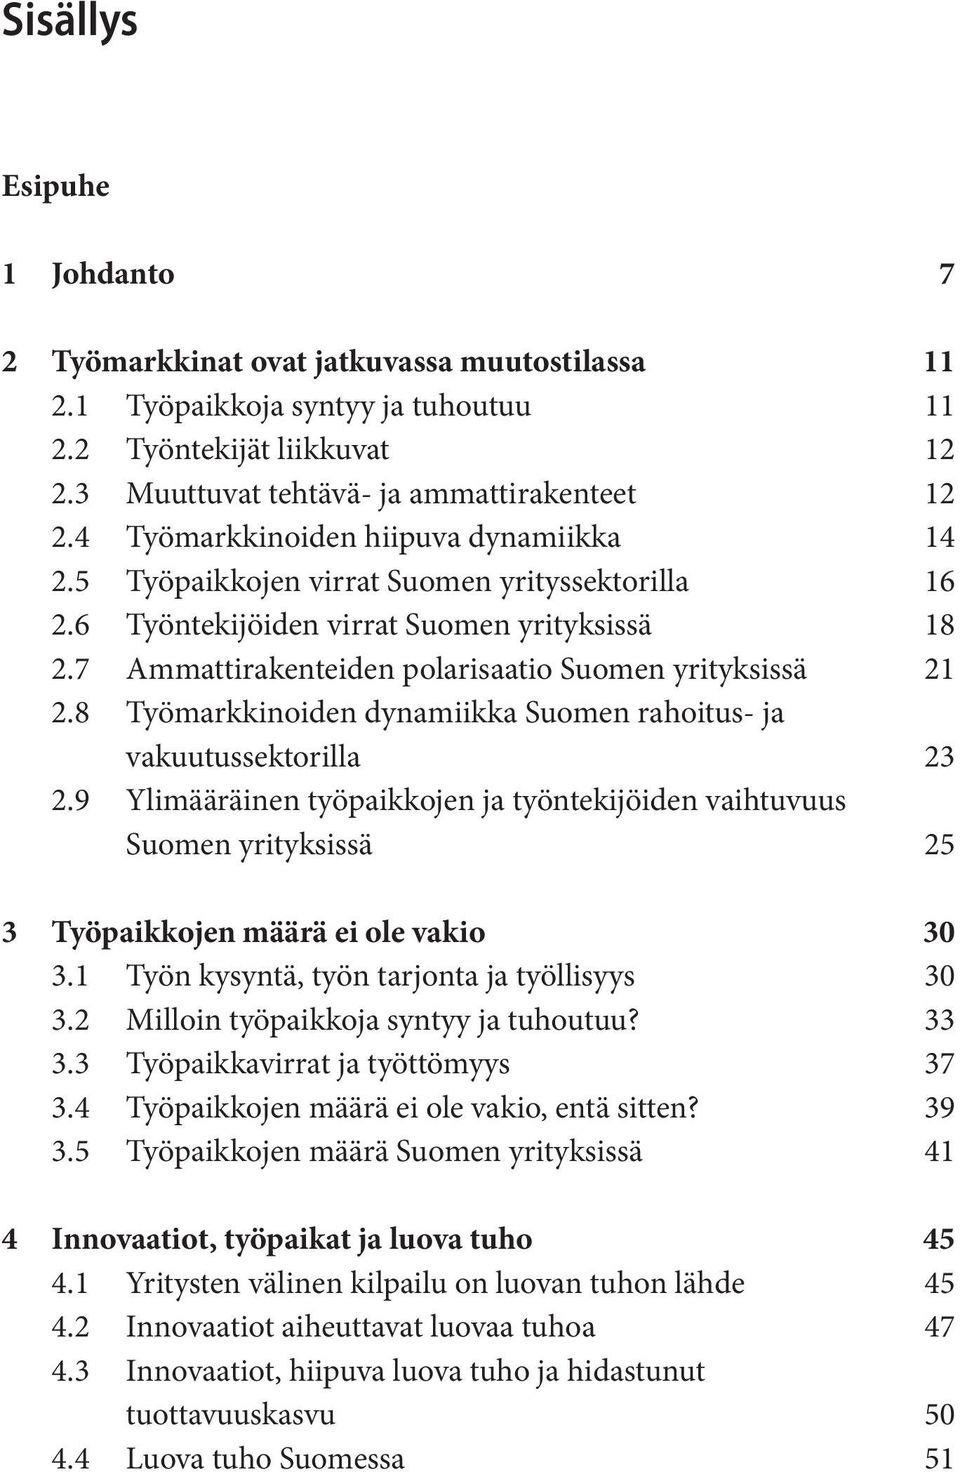 8 Työmarkkinoiden dynamiikka Suomen rahoitus- ja vakuutussektorilla 23 2.9 Ylimääräinen työpaikkojen ja työntekijöiden vaihtuvuus Suomen yrityksissä 25 3 Työpaikkojen määrä ei ole vakio 30 3.